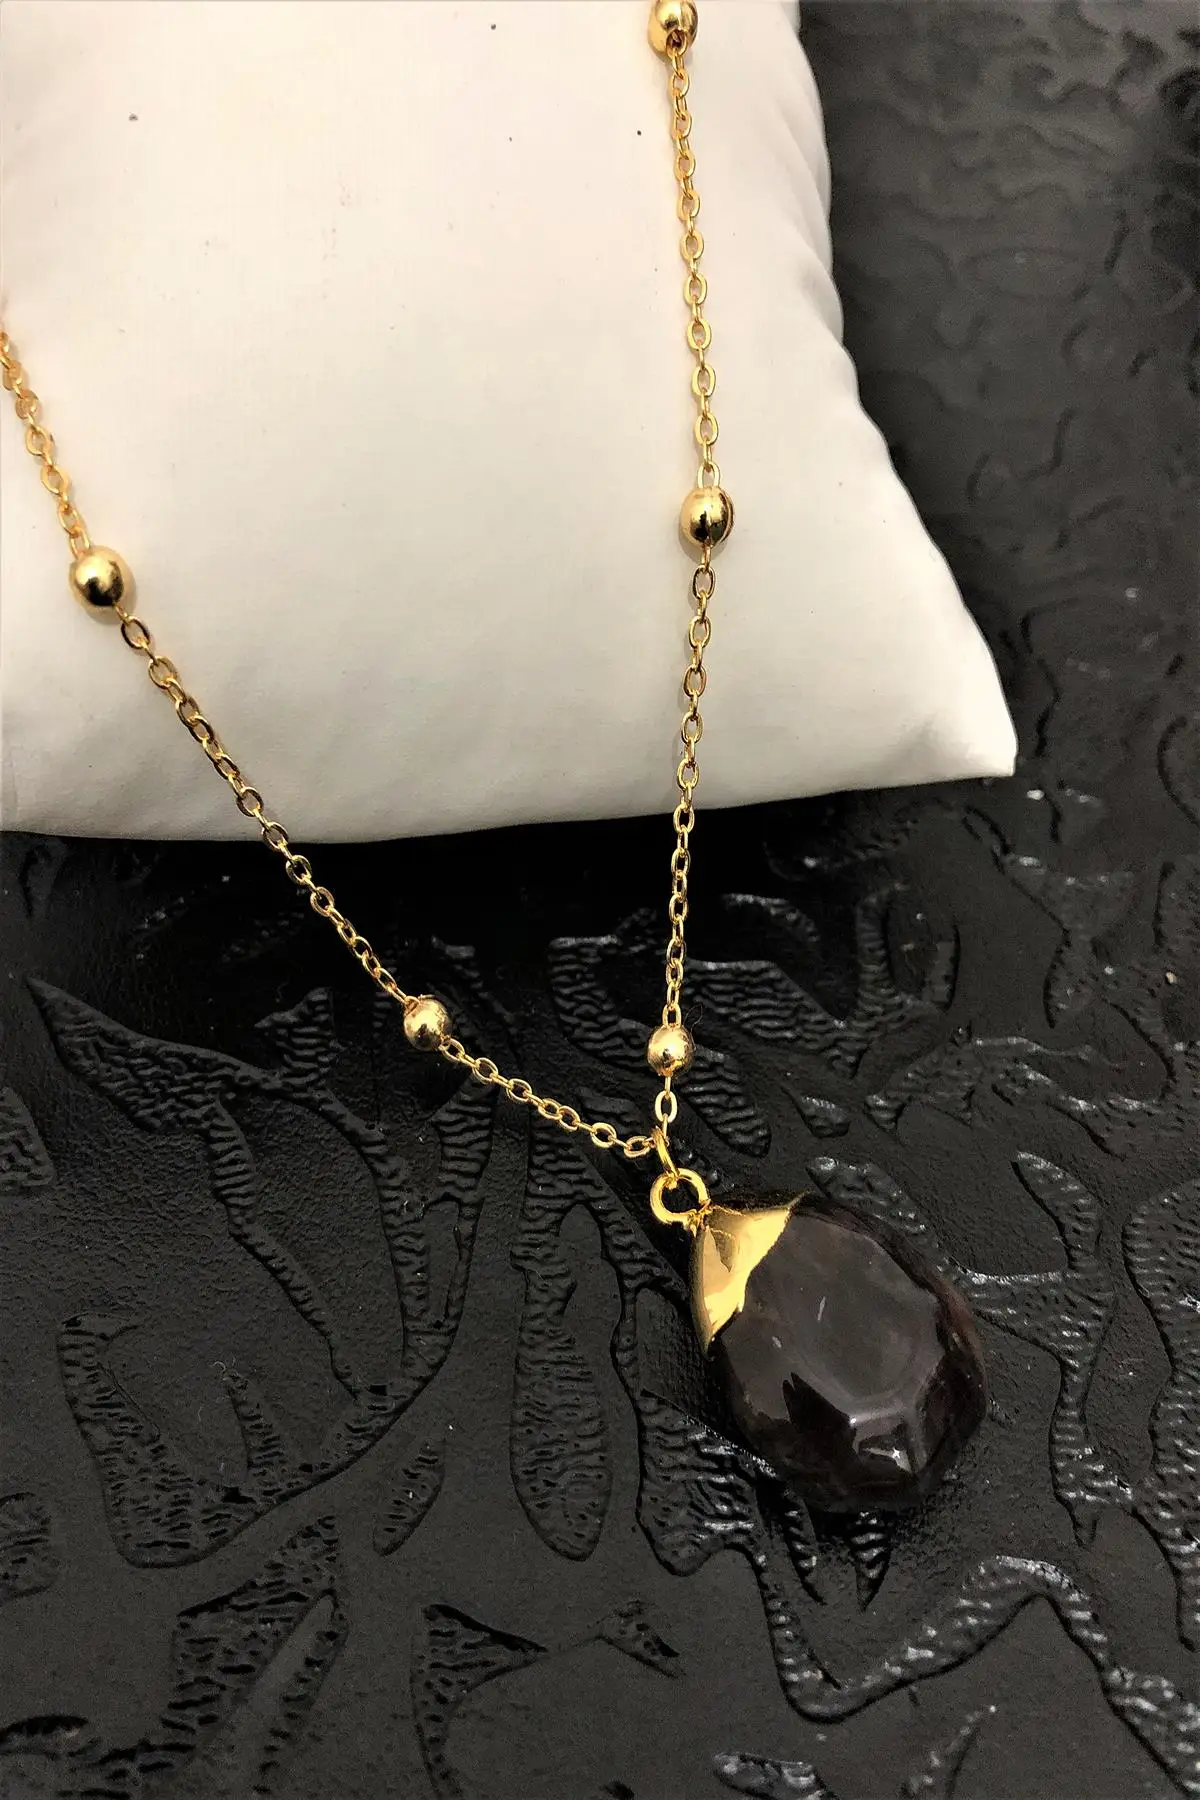 

Женское ожерелье ручной работы с золотым камнем яшмы 22 карата Tkrb21